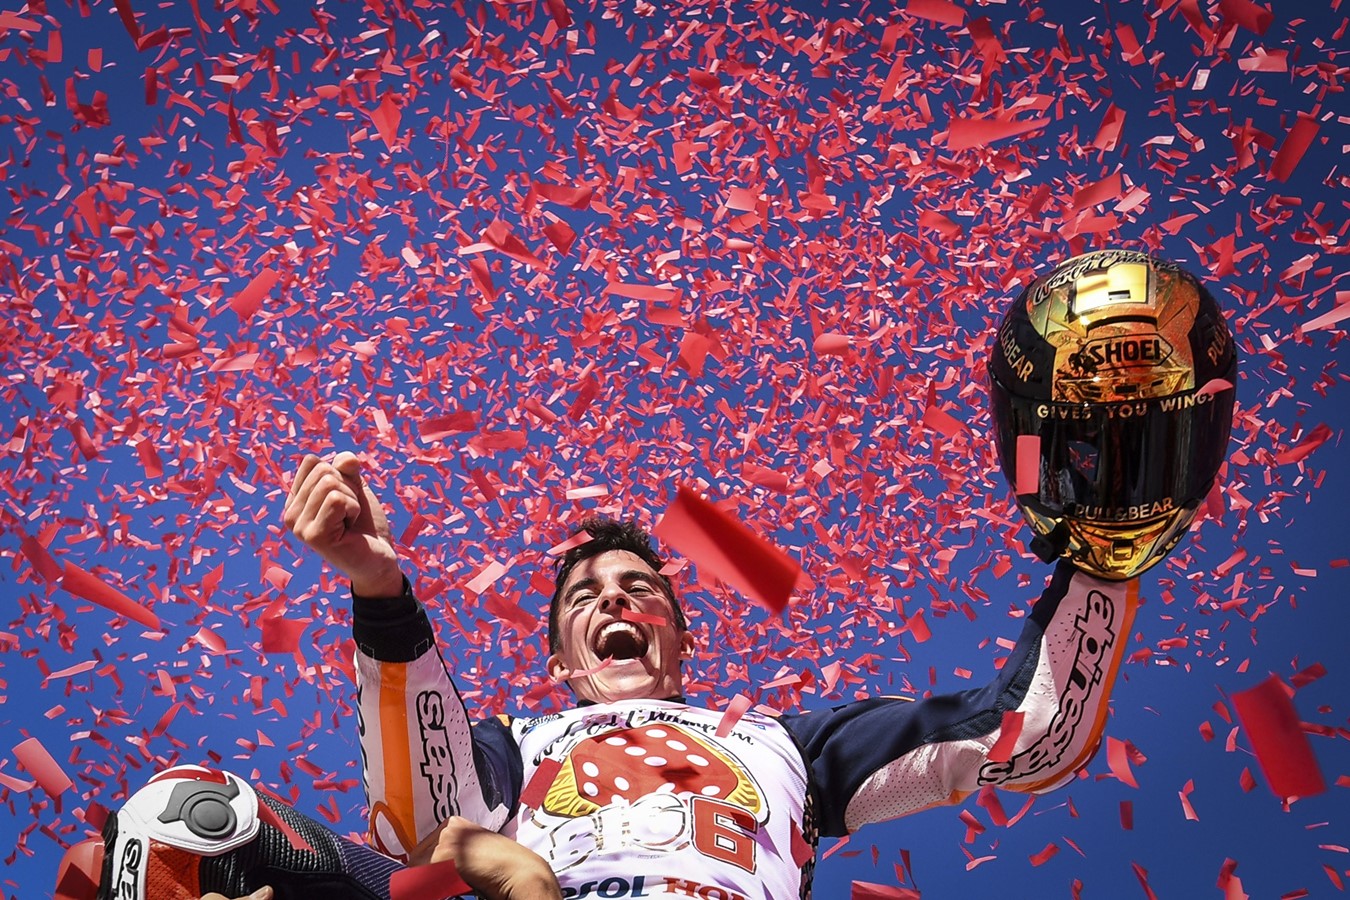 Marc Márquez ist MotoGP Weltmeister 2017 und das Repsol Honda Team sichert sich den Dreifach-Titel